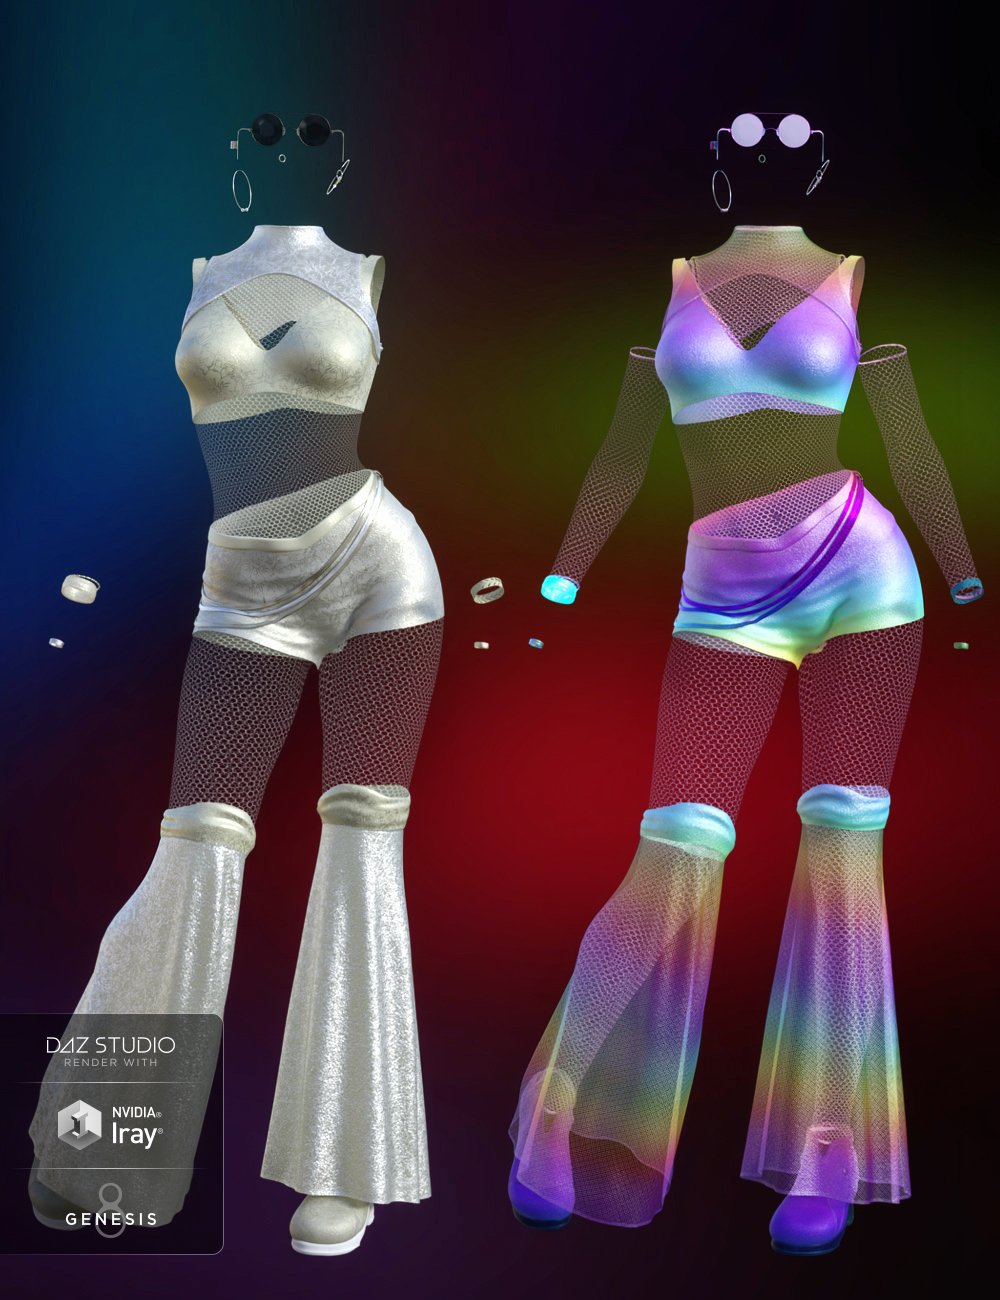 dForce Rave Party Outfit Textures by: DestinysGarden, 3D Models by Daz 3D